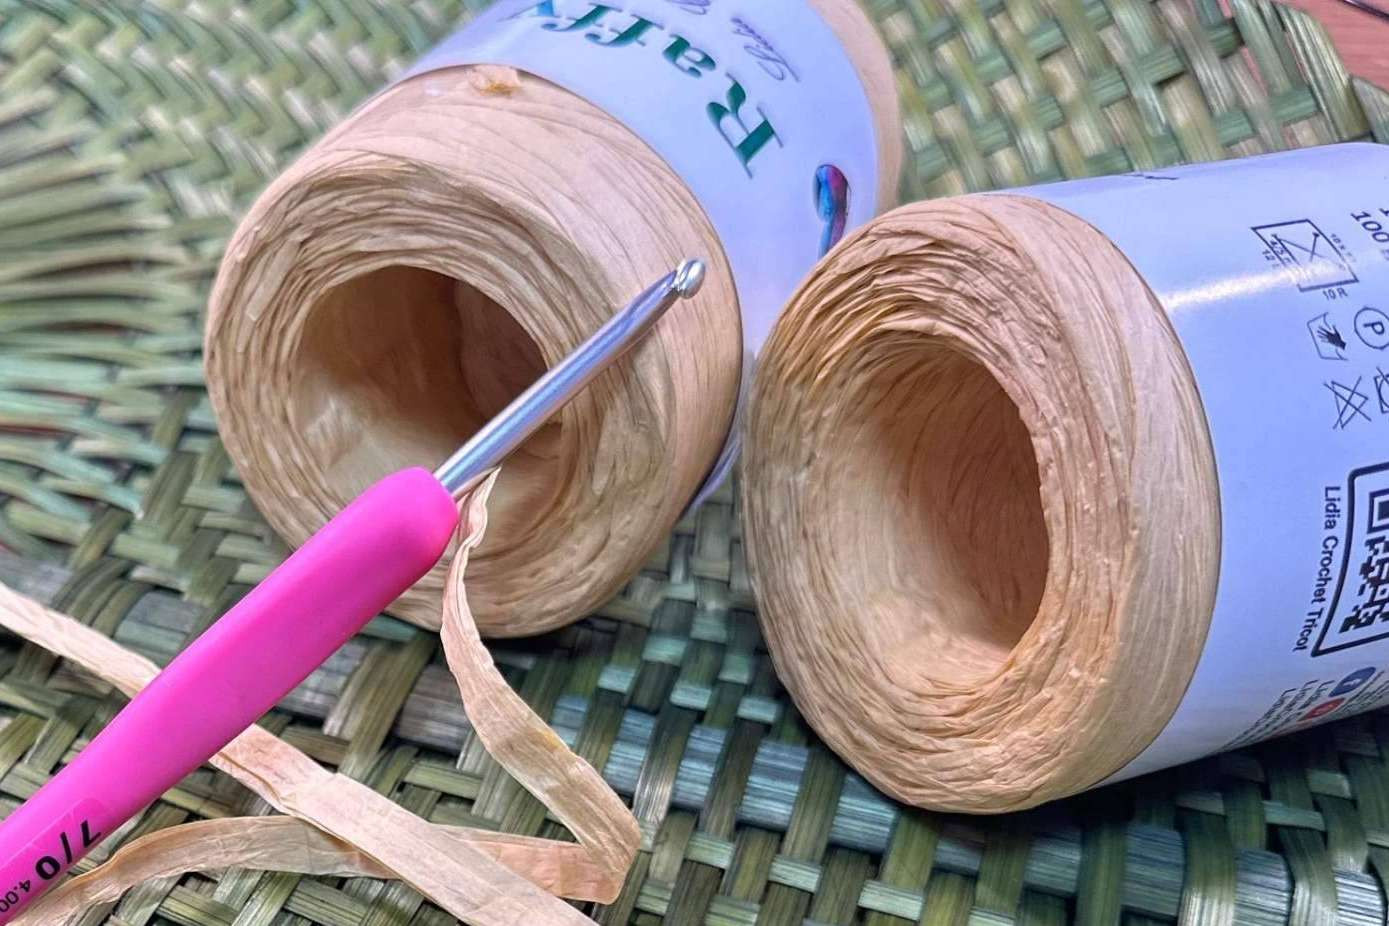  Raffy, la lana de papel de Lidia Crochet Tricot que impulsa la sostenibilidad en el ámbito textil 